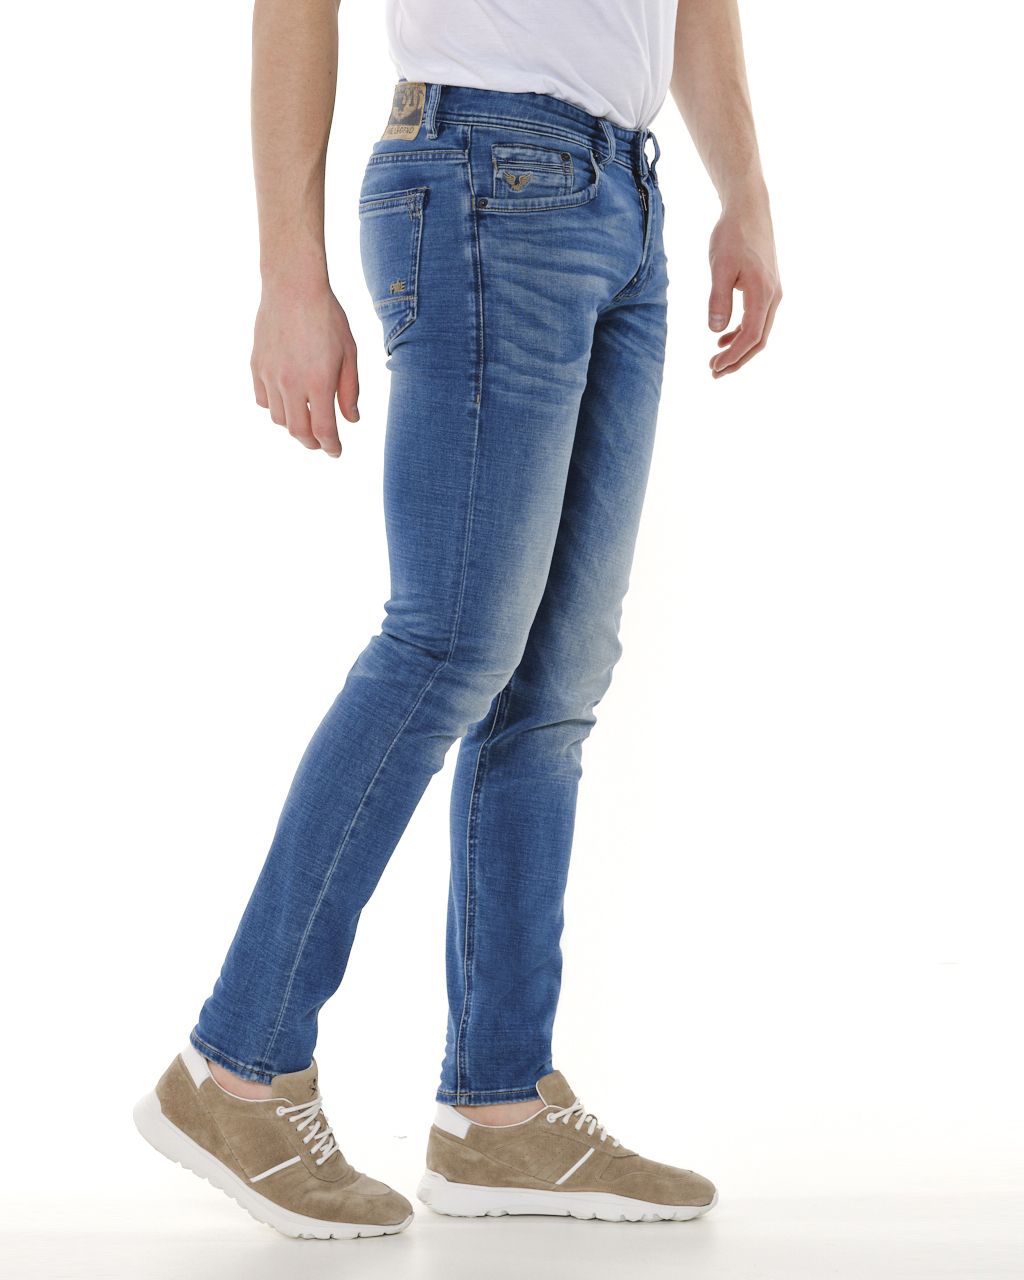 titel vonnis Gooi PME Legend Tailwheel Jeans | Shop nu - OFM.